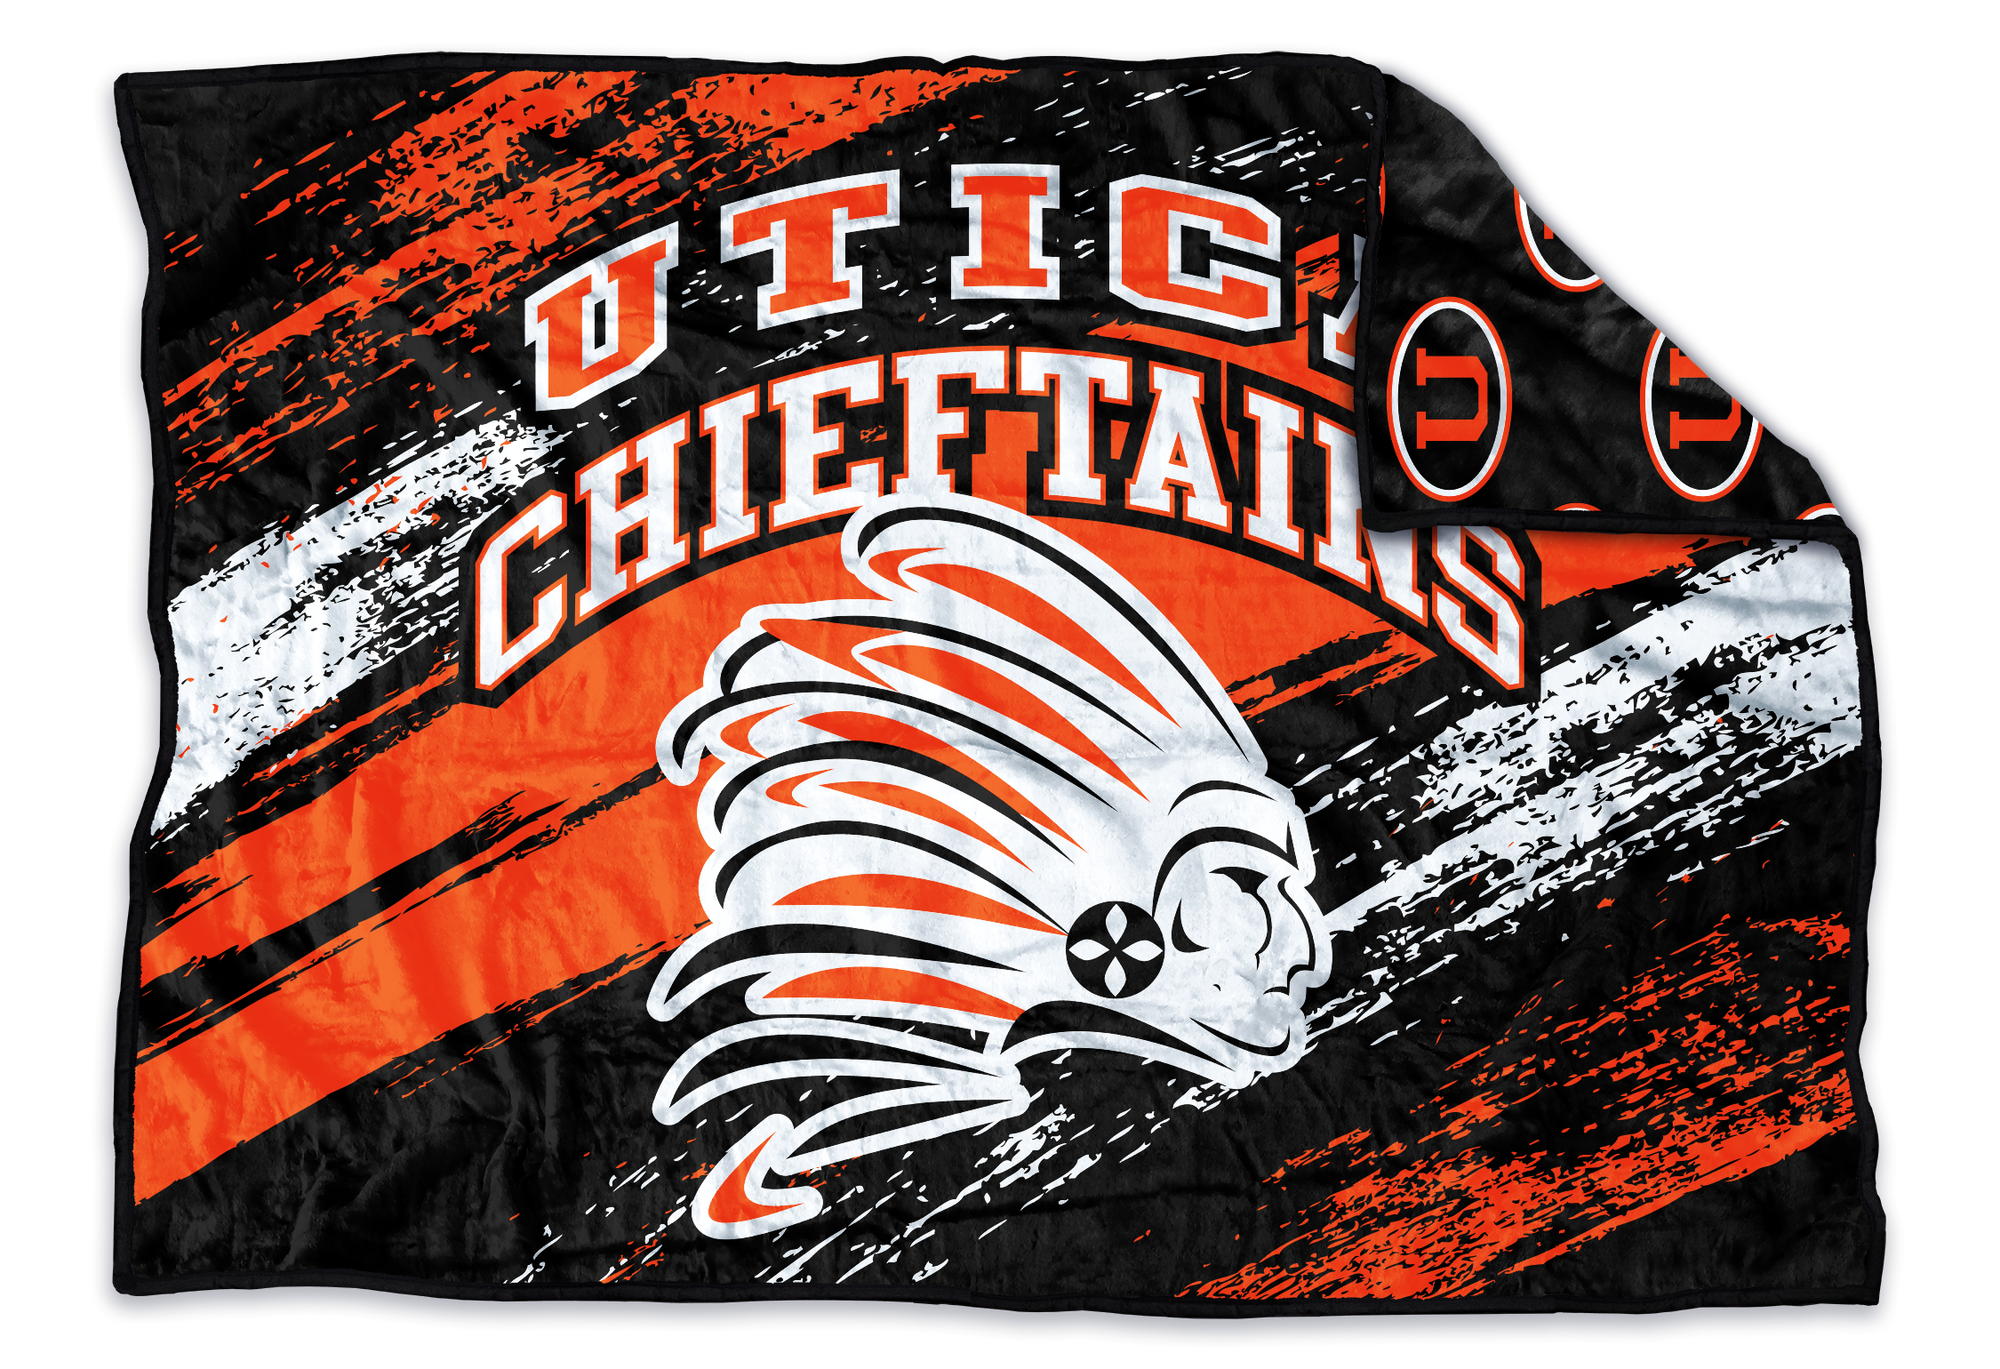 Utica Chieftains